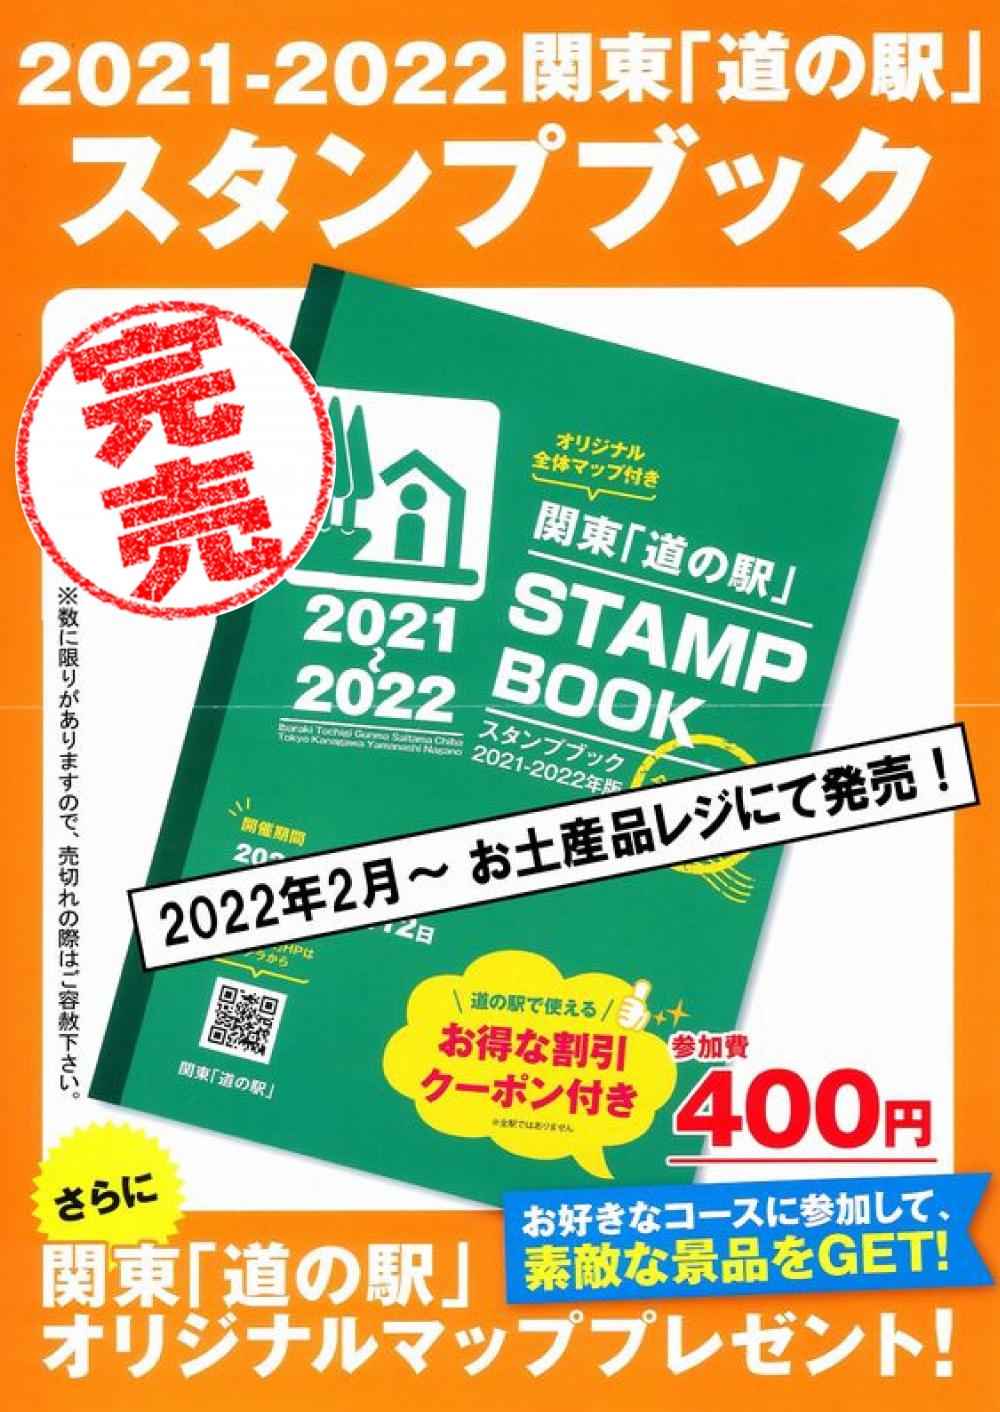 関東「道の駅」スタンプブック☆2022年度分完売しましたに関するページ